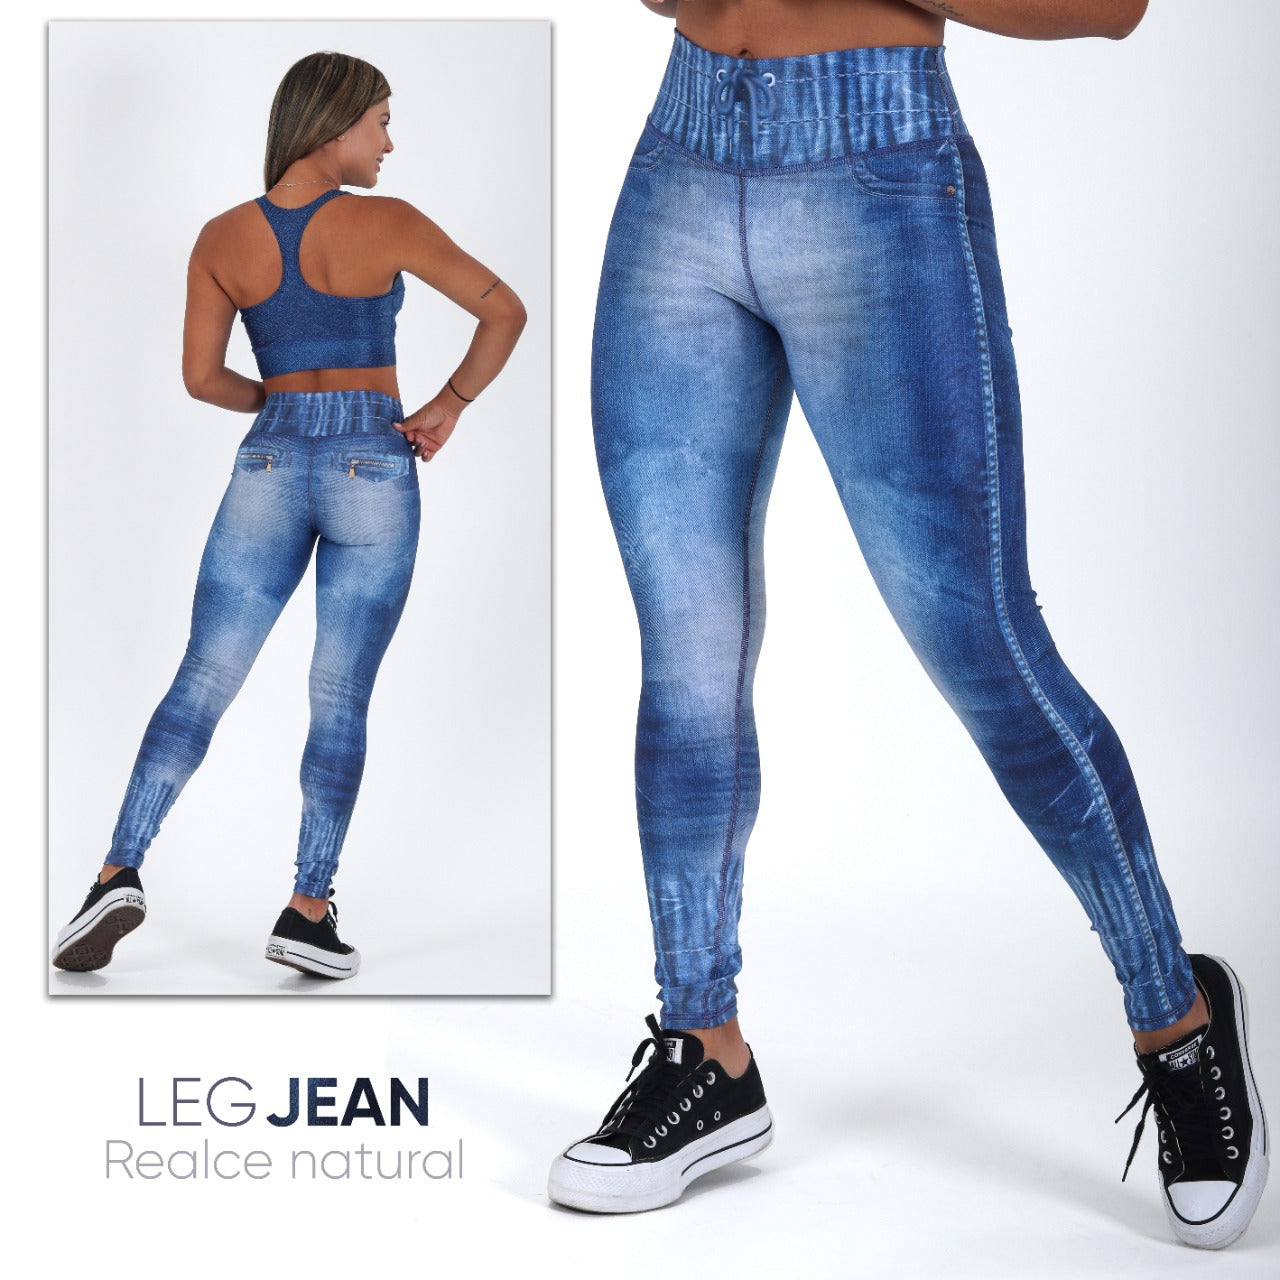 Legging Jean Leggings Sport  Leggings Jeans Fitness - Jeans